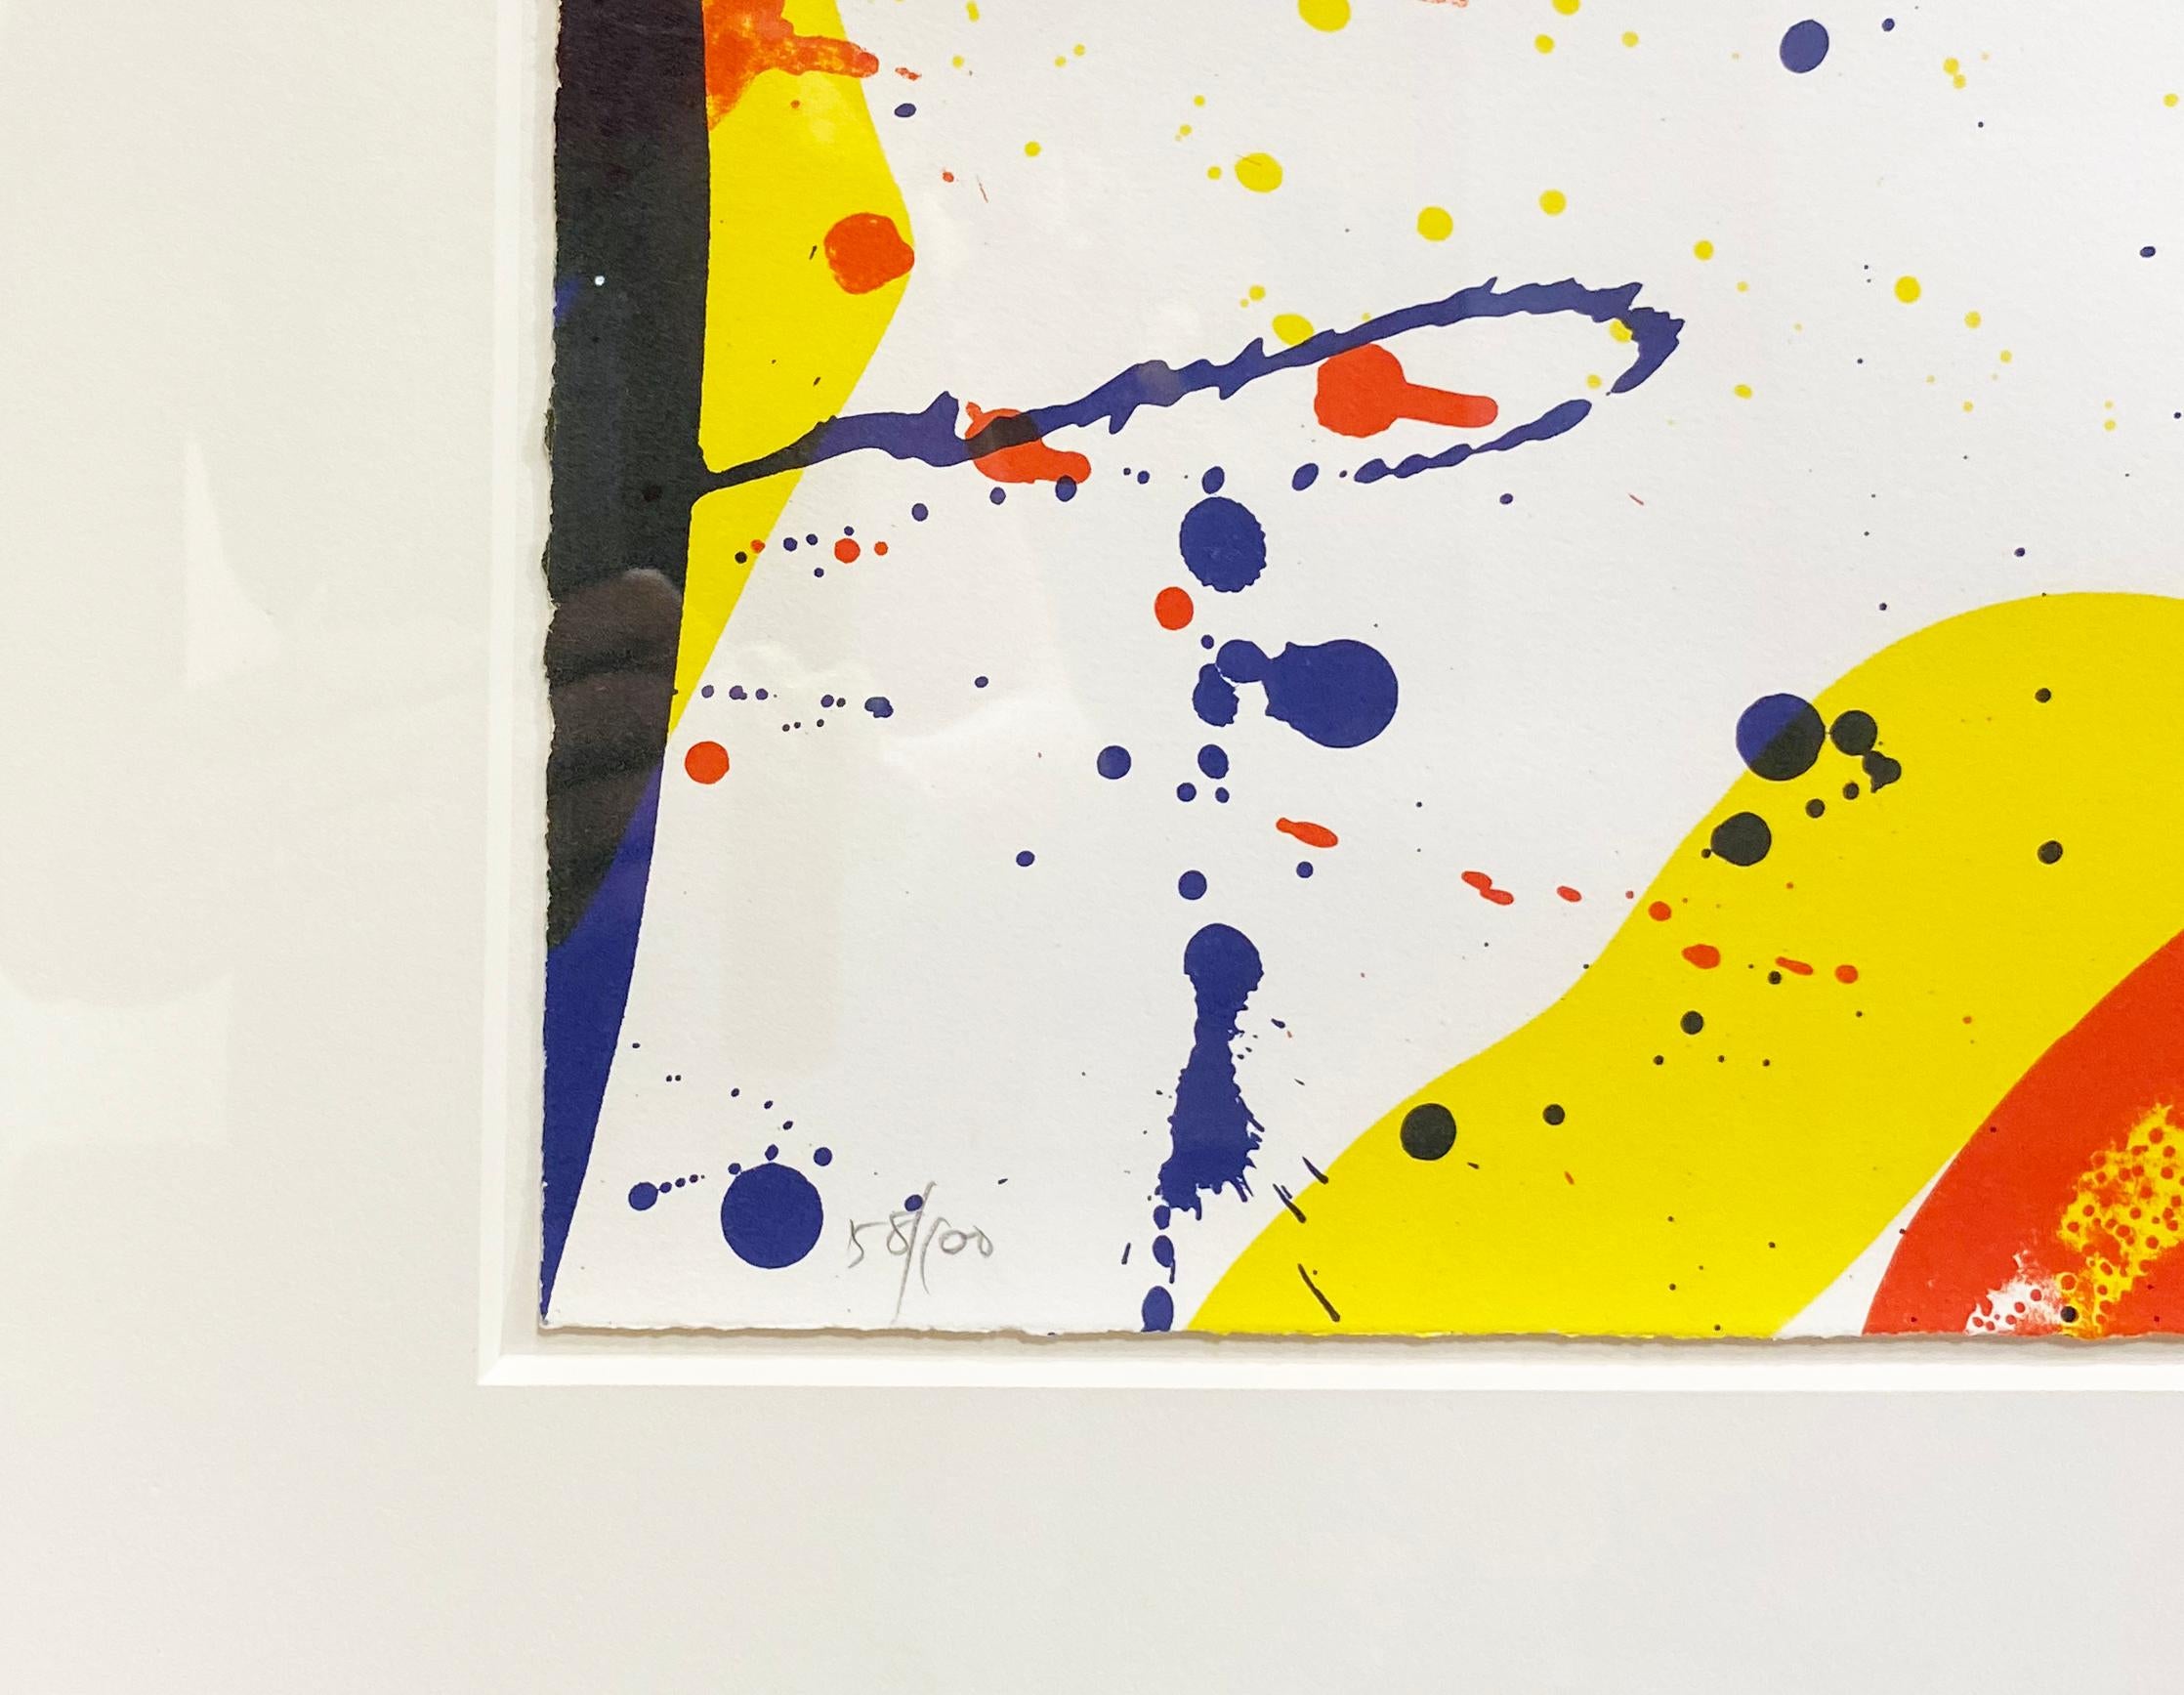 Encadré
Sam Francis (Américain, 1923-1994)
Edition 58/100 au crayon en bas à gauche
Signé au crayon en bas à droite
17 x 22 pouces
25.5 x 30.5 pouces

Peintre expressionniste abstrait* connu pour ses couleurs éclatantes et ses formes en forme